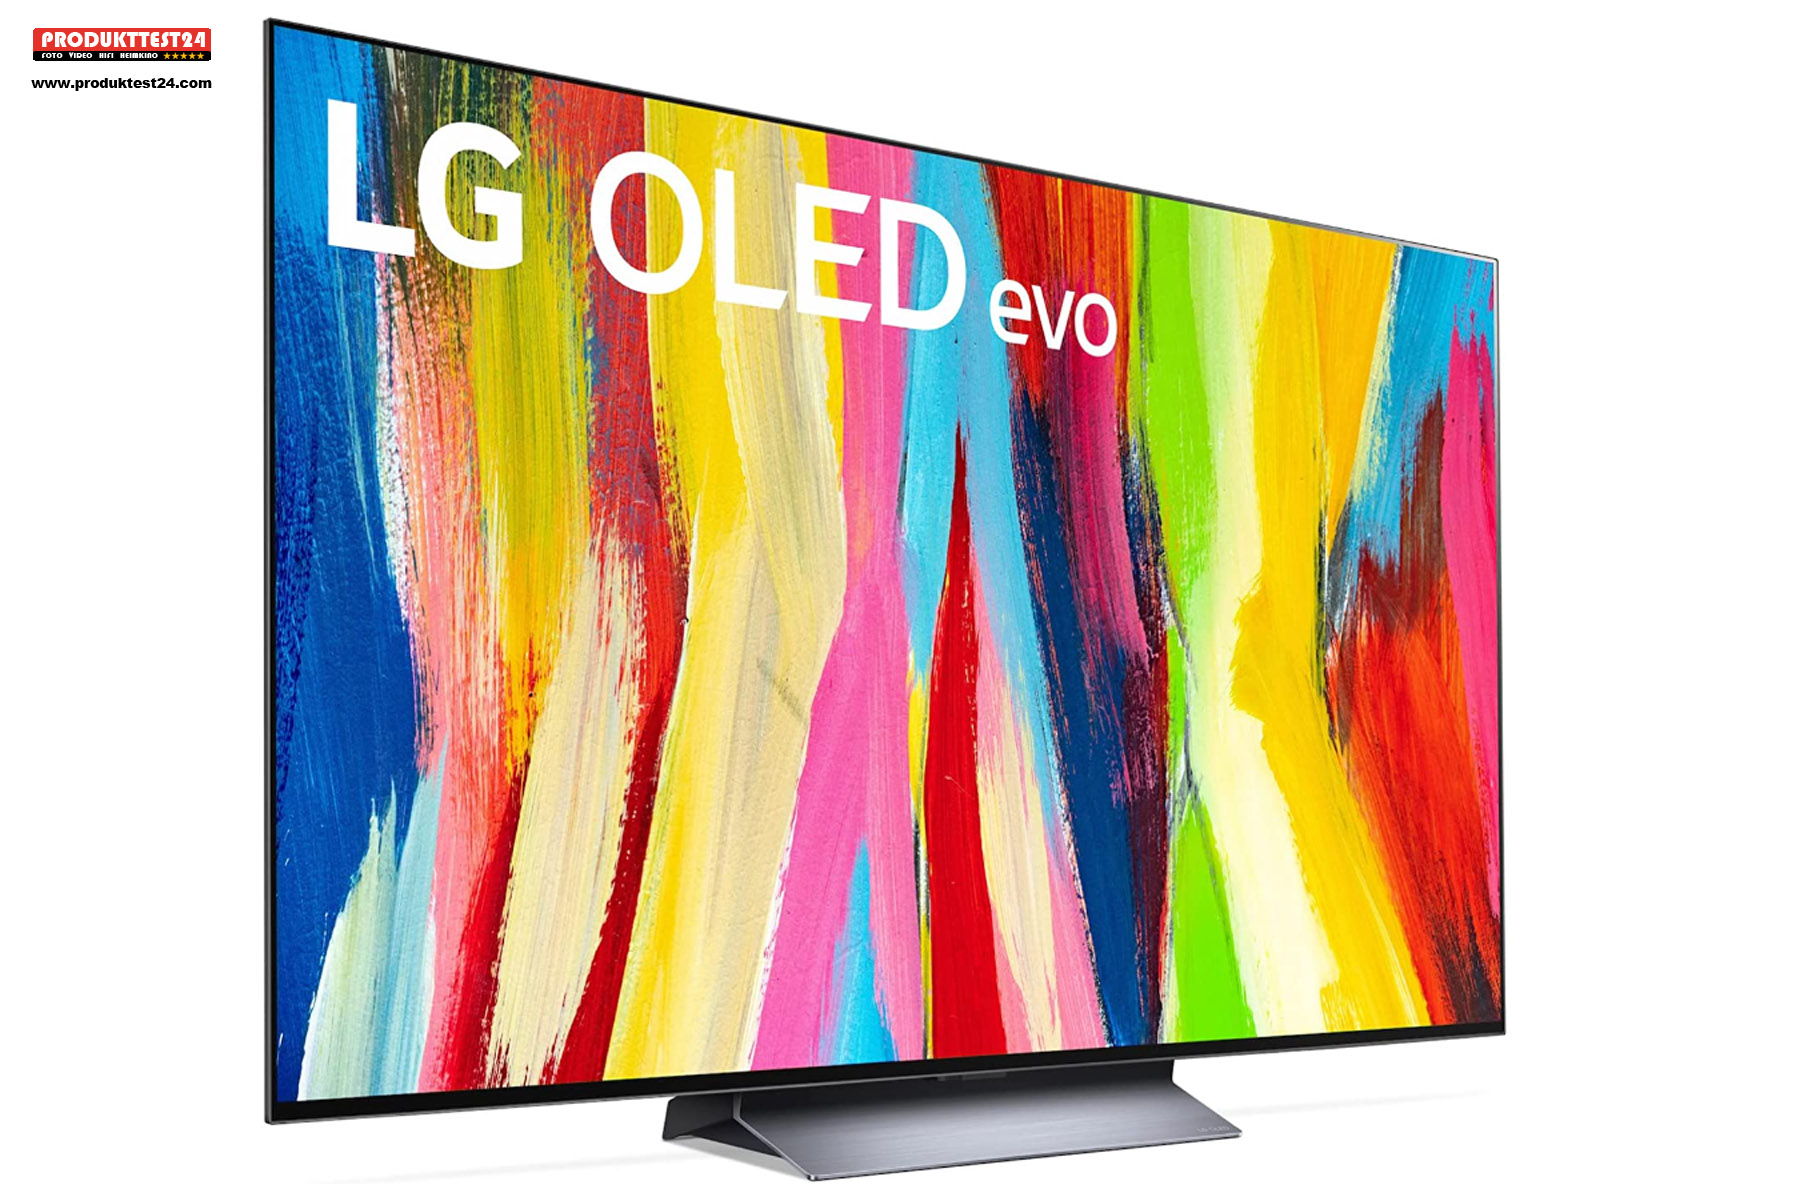 LG OLED C2 - 77 Zoll / 195 cm Bilddiagonale, OLED EVO Panel mit 120 Hz, Twin-Tuner, SmartTV und Sprachsteuerung.